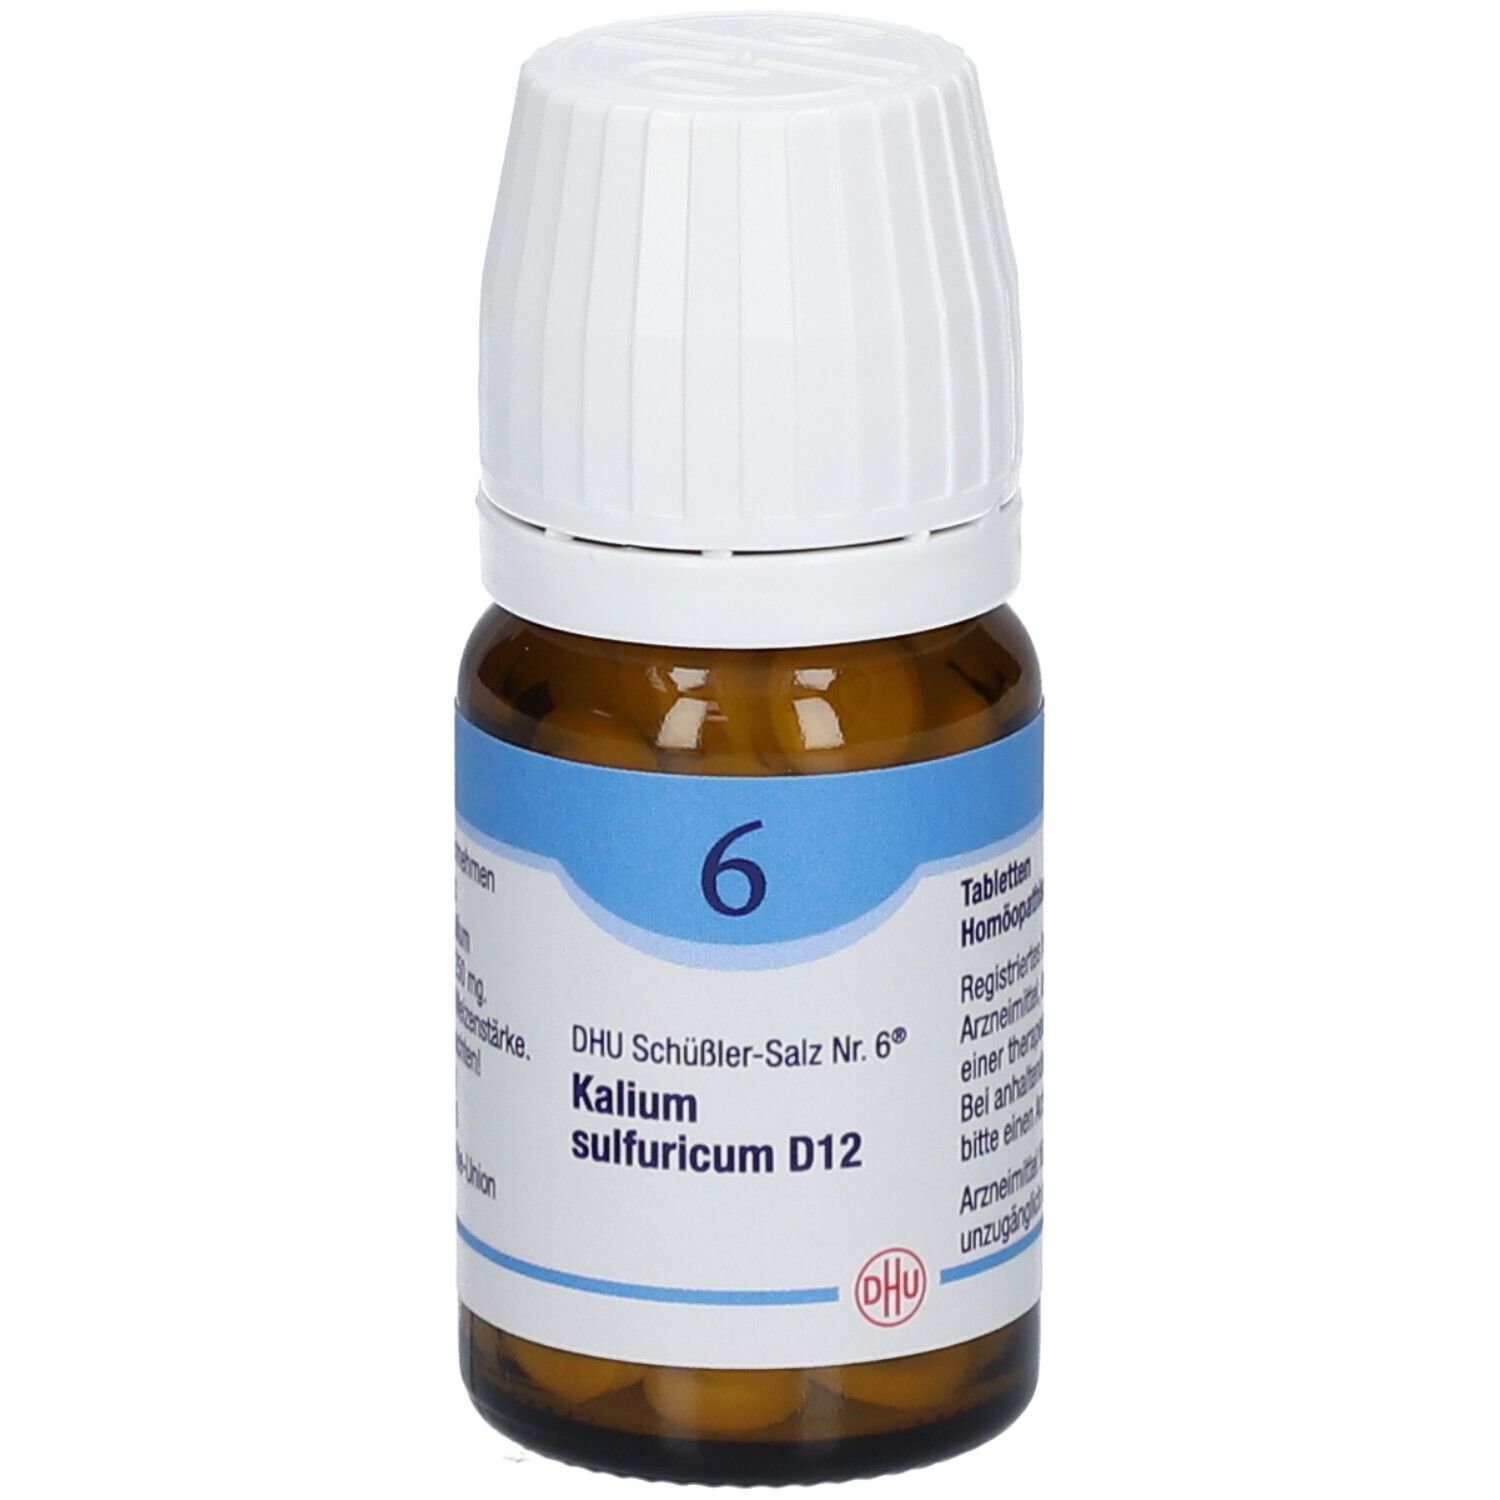 DHU Schüßler-Salz Nr. 6® Kalium sulfuricum D12